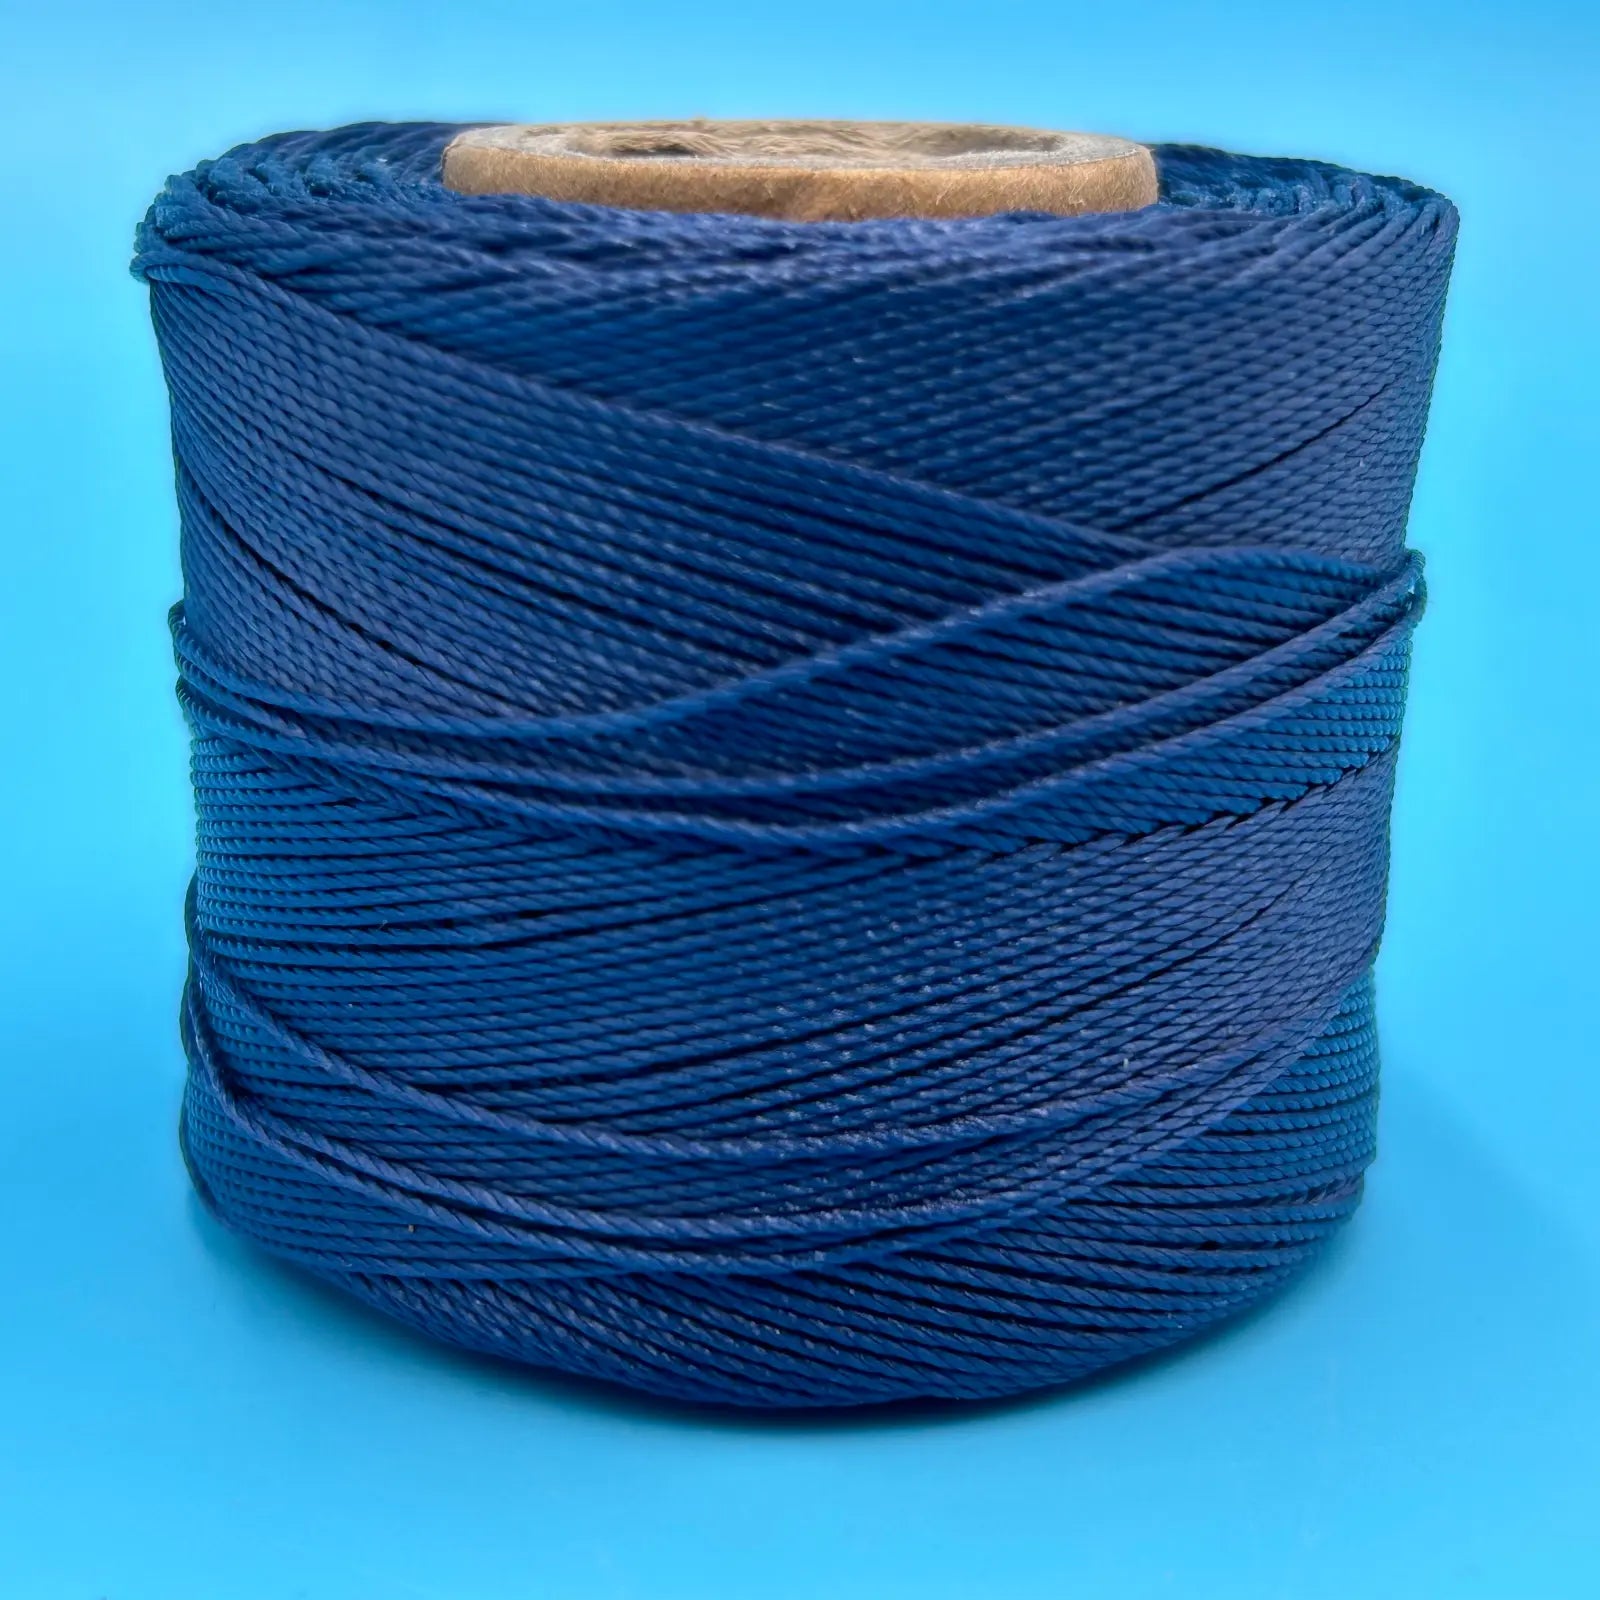 Conso #18 Bonded Nylon Heavy Hand Sewing Thread - 765 Navy